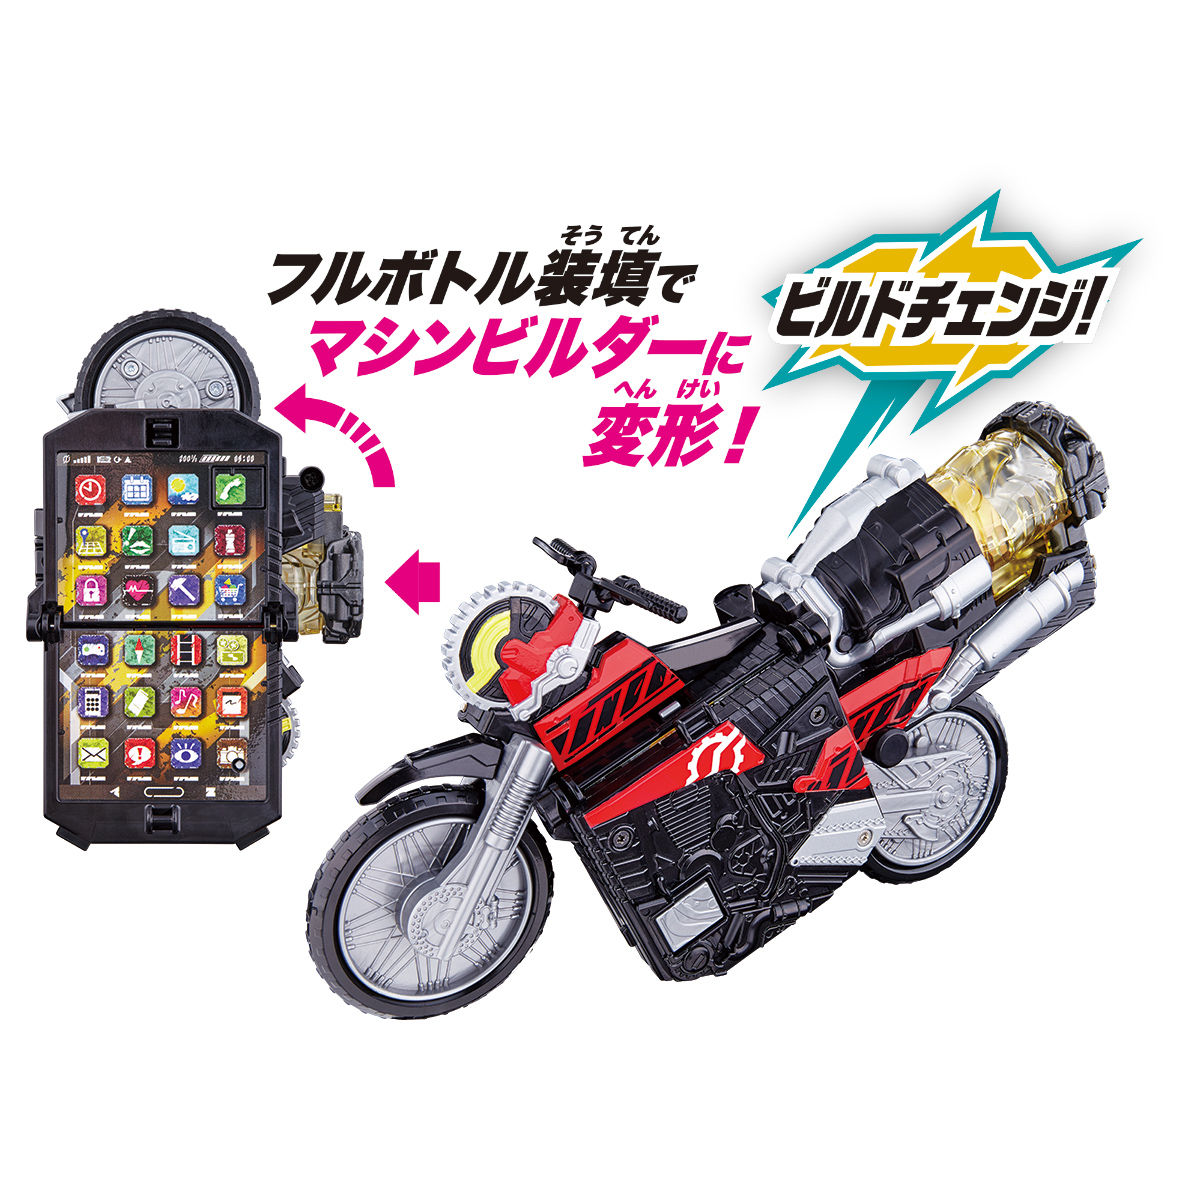 バイク変形 Dxビルドフォン 仮面ライダーおもちゃウェブ バンダイ公式サイト